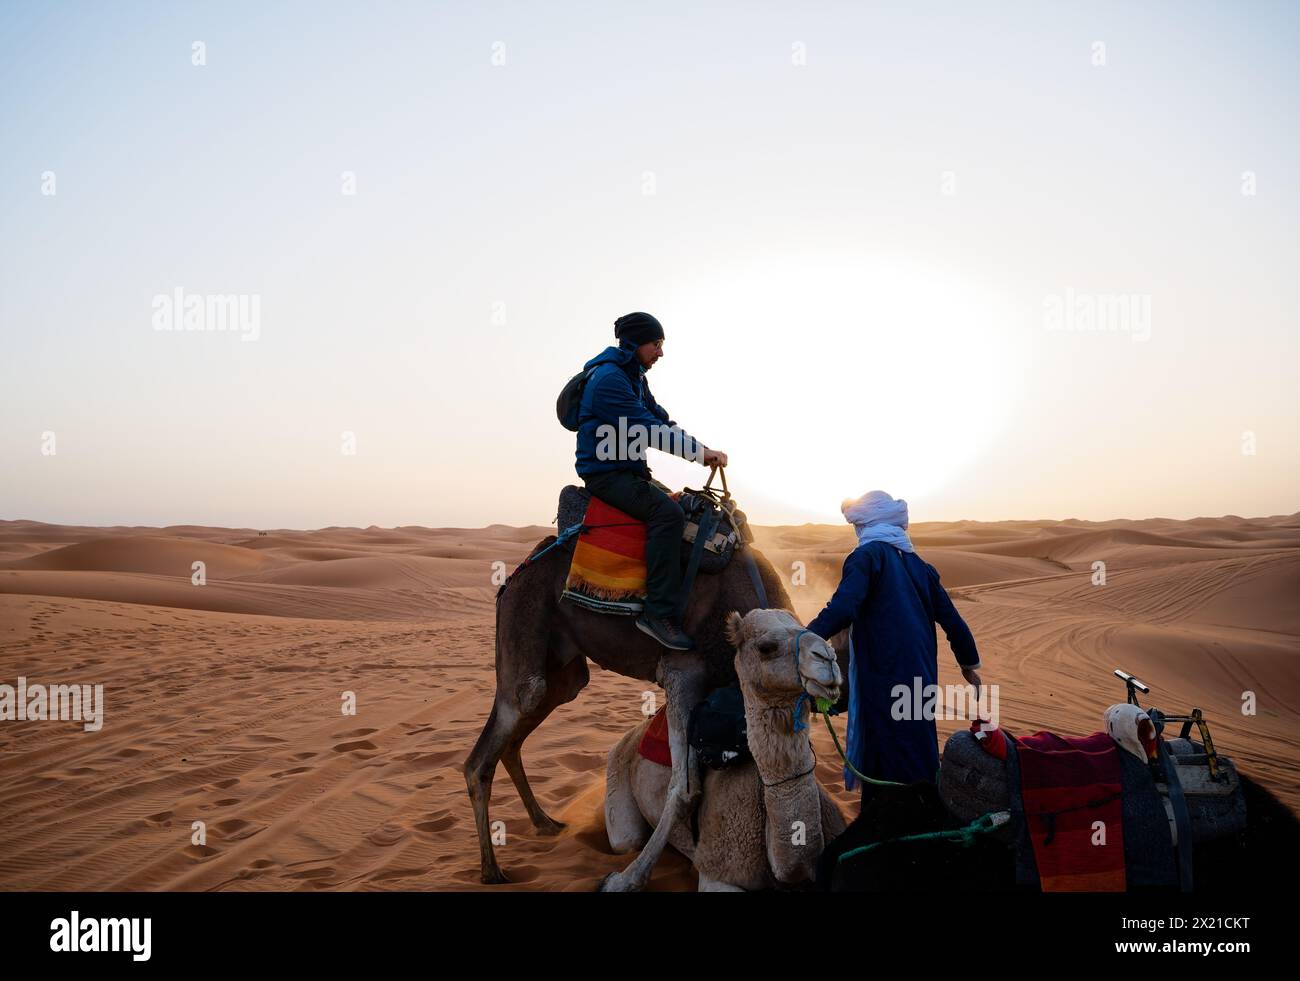 Touriste d'âge mûr assis au sommet d'un dromadaire tentant de monter un autre chameau au repos, alors qu'un manipulateur calme intervient contre un lever de soleil aveuglant. Banque D'Images